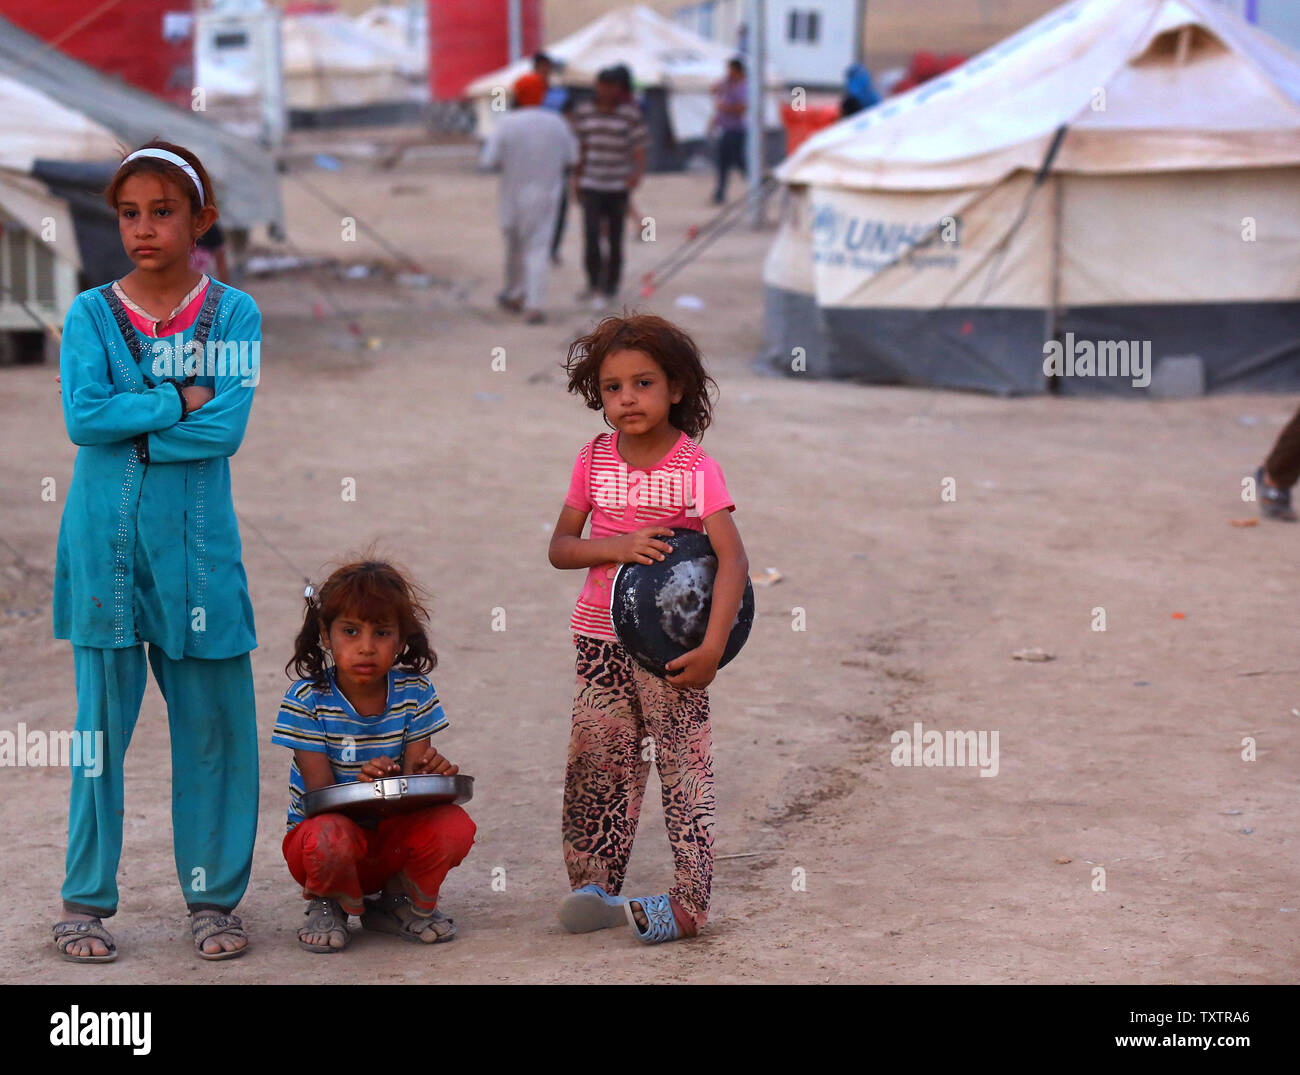 I rifugiati iracheni ragazze , che sono fuggiti dalle violenze a Mosul, attendere fino a ricevere gratuitamente il cibo durante il sacro mese di digiuno del Ramadan all'interno del Khazer campo profughi alla periferia di Arbil in Iraq le regione del Kurdistan, 29 giugno 2014.decine di migliaia di persone sono fuggite in Iraq della seconda più grande città di Mosul dopo che essa è stata invasa da ISIS (Stato islamico dell Iraq e Siria) militanti. Molti sono stati temporaneamente alloggiato in diversi campi di sfollati interni attorno alla regione compresa la zona vicino a Erbil, come essi sperano di immettere la sicurezza della vicina regione curda. UPI/Ceerwan Aziz Foto Stock